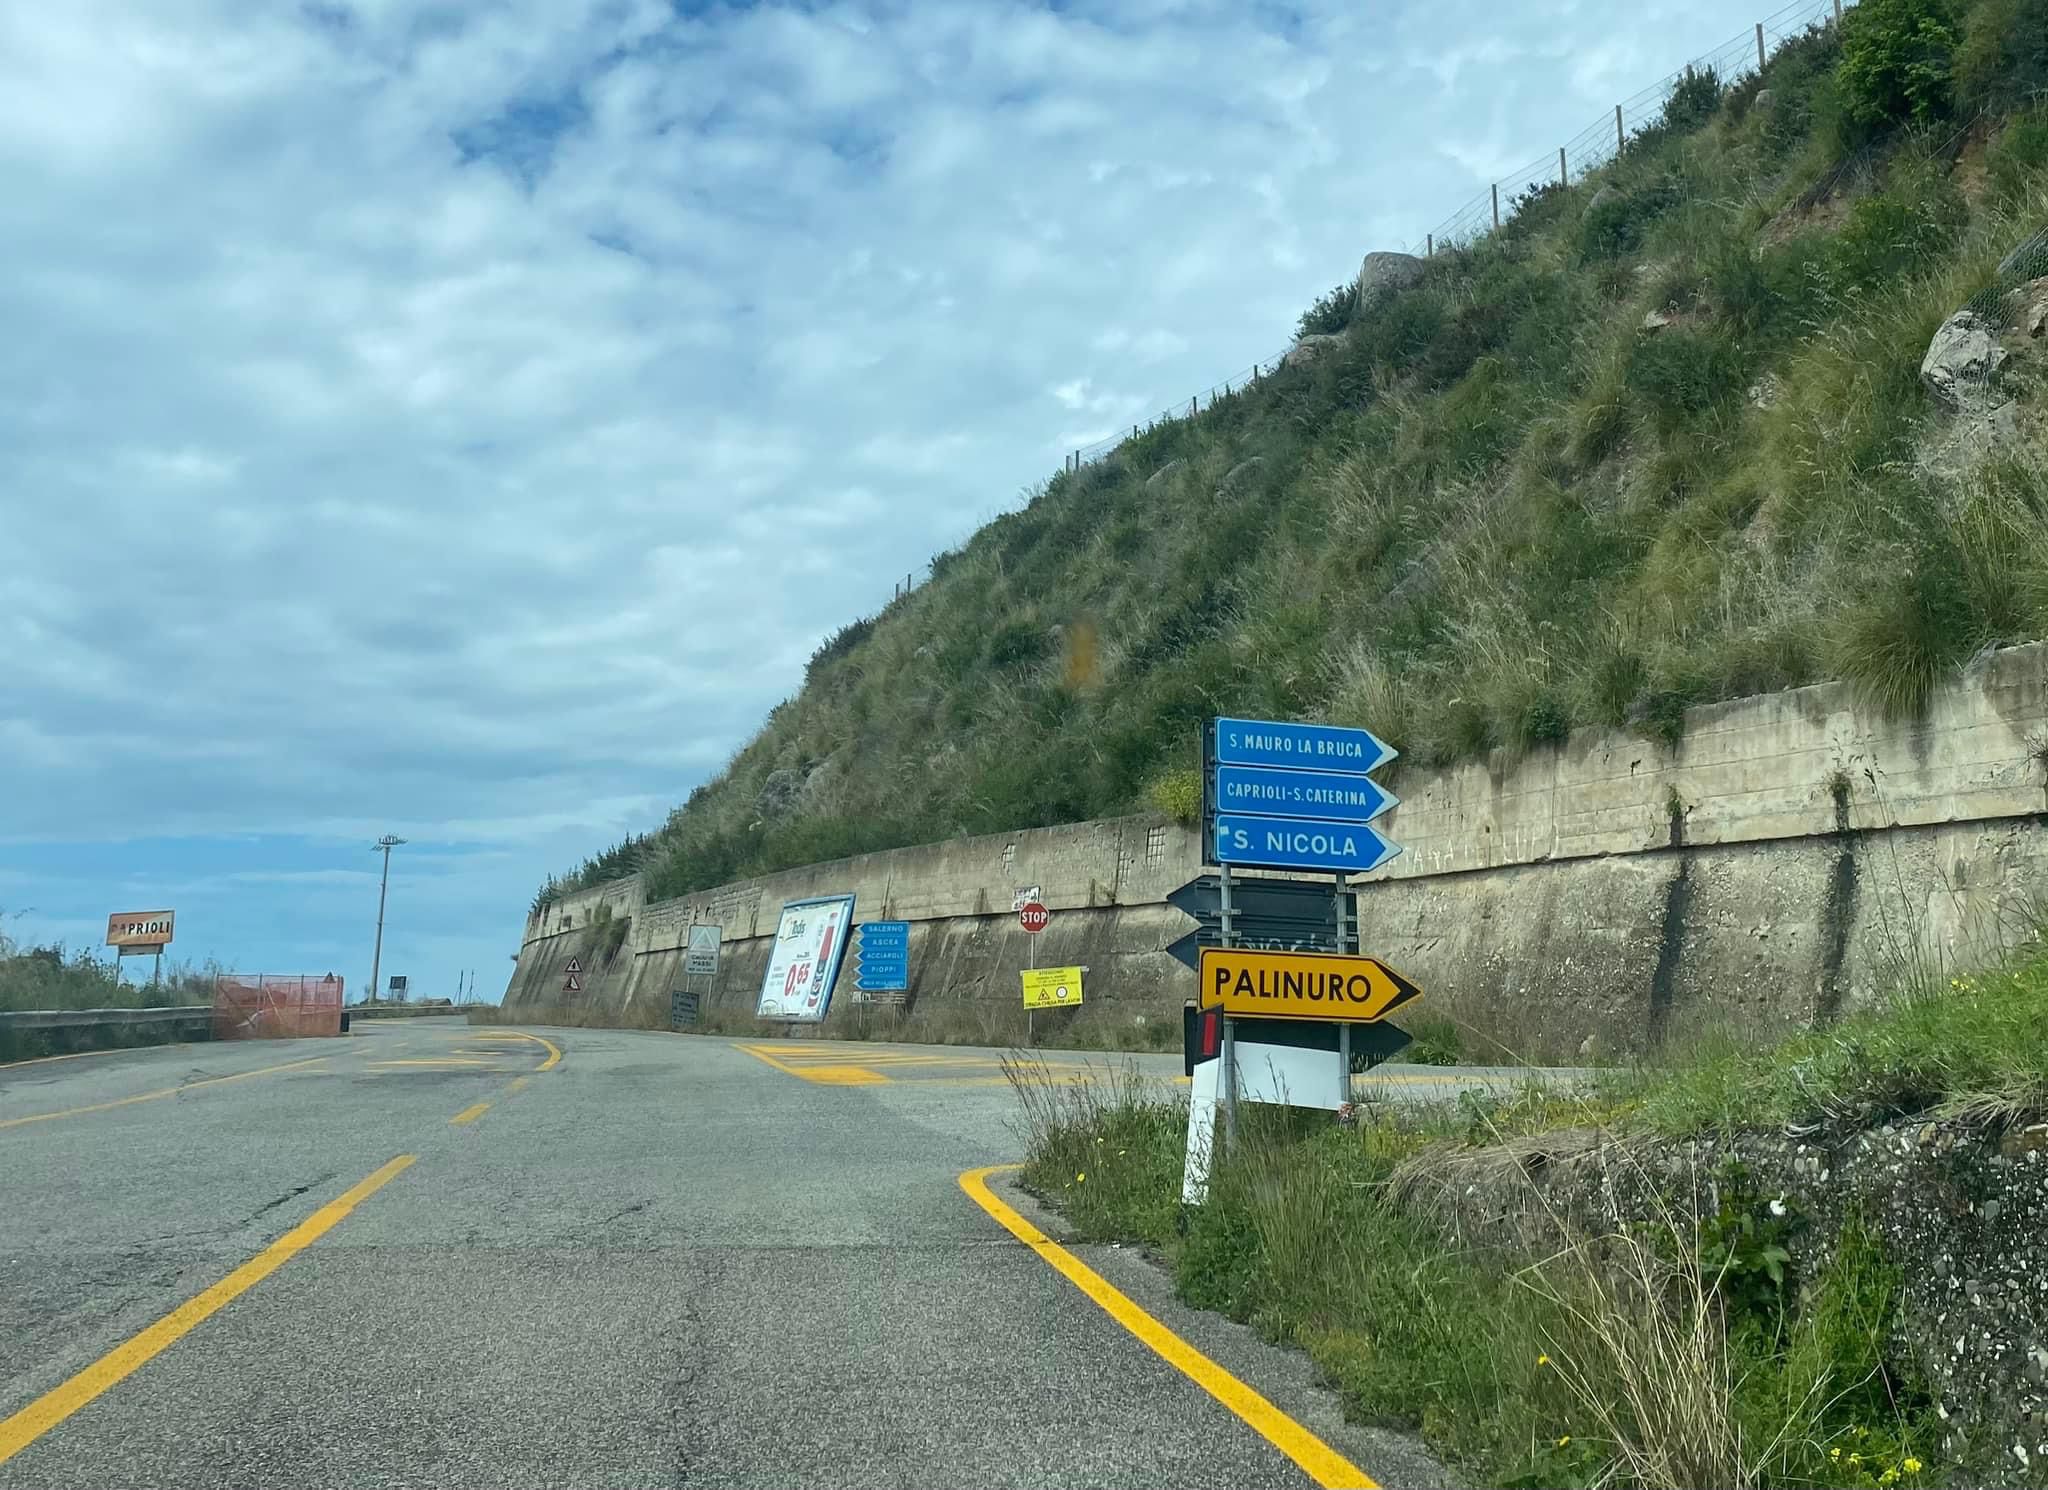 Cartelli stradali sbagliati tra Palinuro e Pisciotta: «Rimuoveteli, così disorientiamo i turisti»